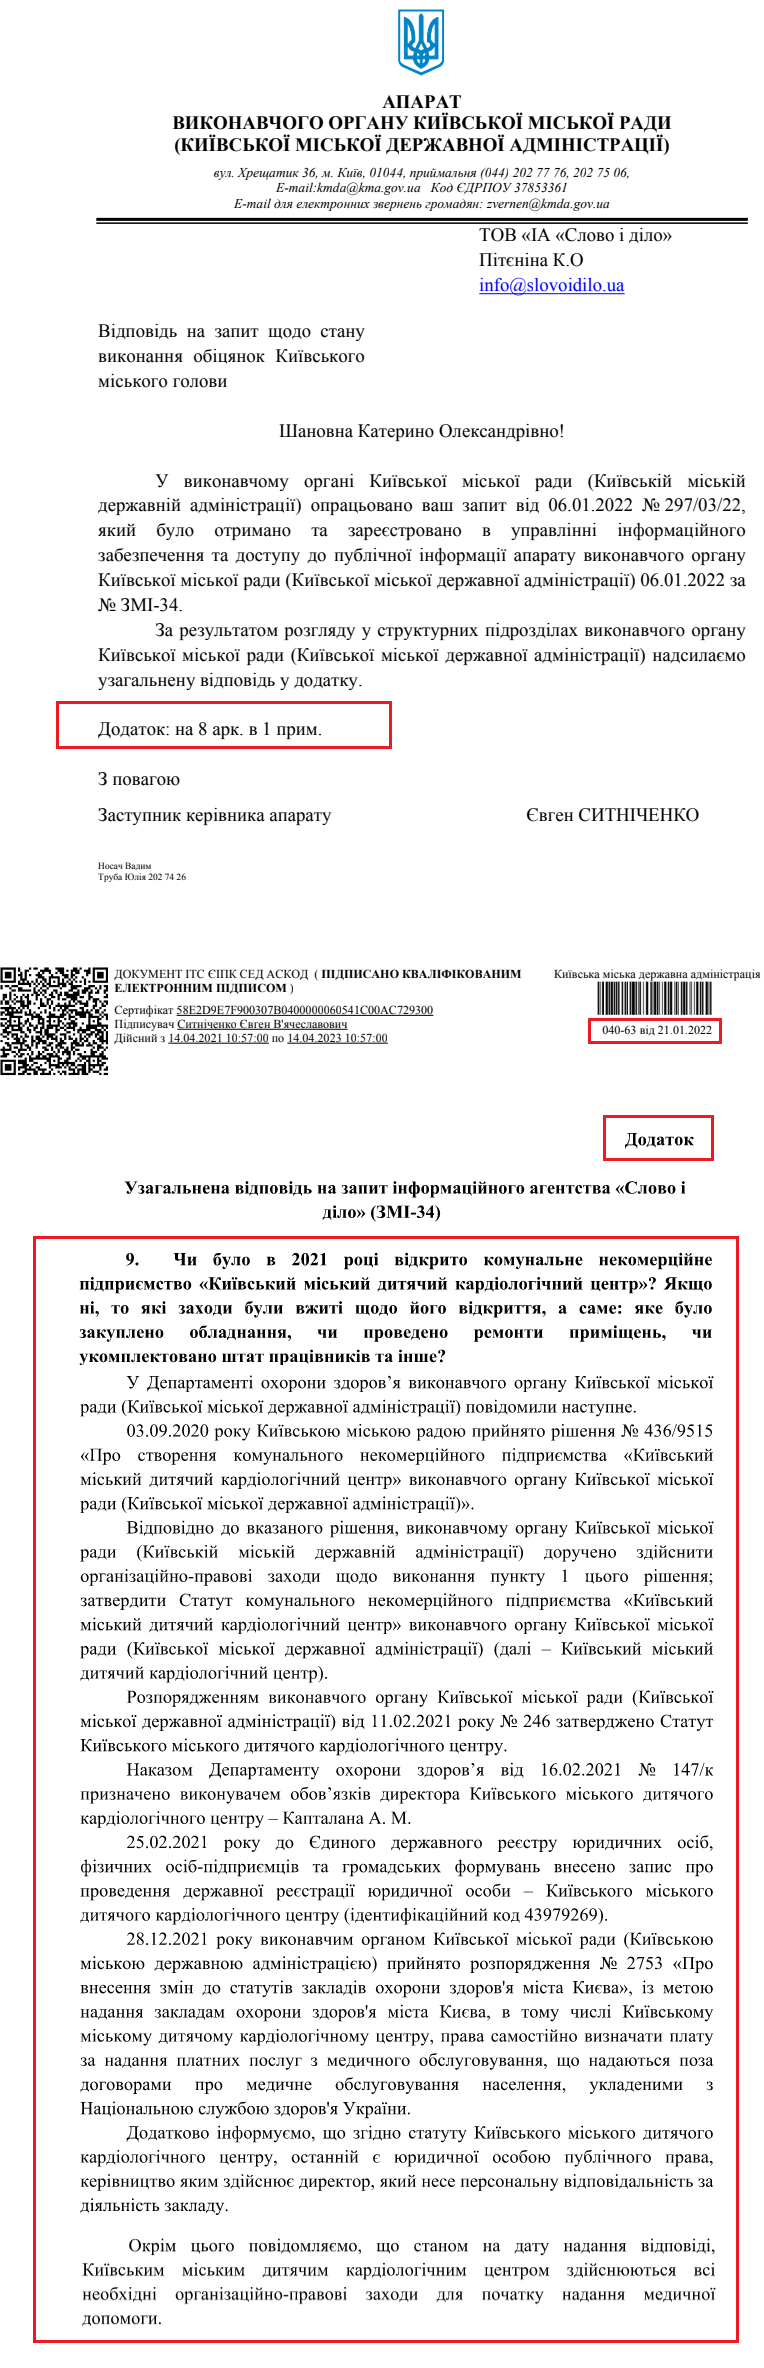 Лист Київської міської державної адміністрації від 21 січня 2022 року